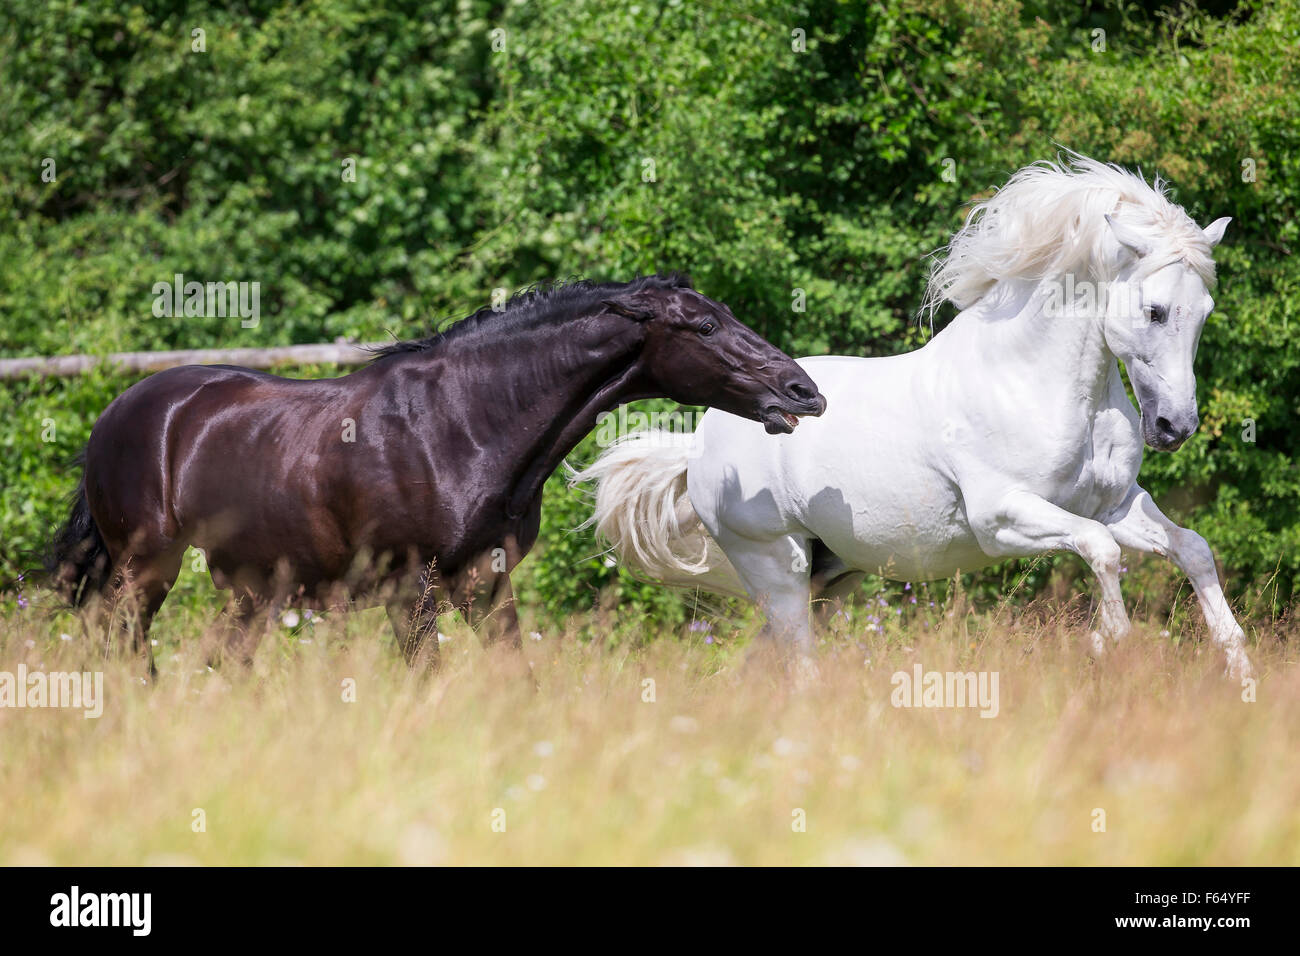 Rein spanische Pferd, andalusischen. Schwarzer Hengst droht weißen Hengst  auf der Weide. Schweiz Stockfotografie - Alamy